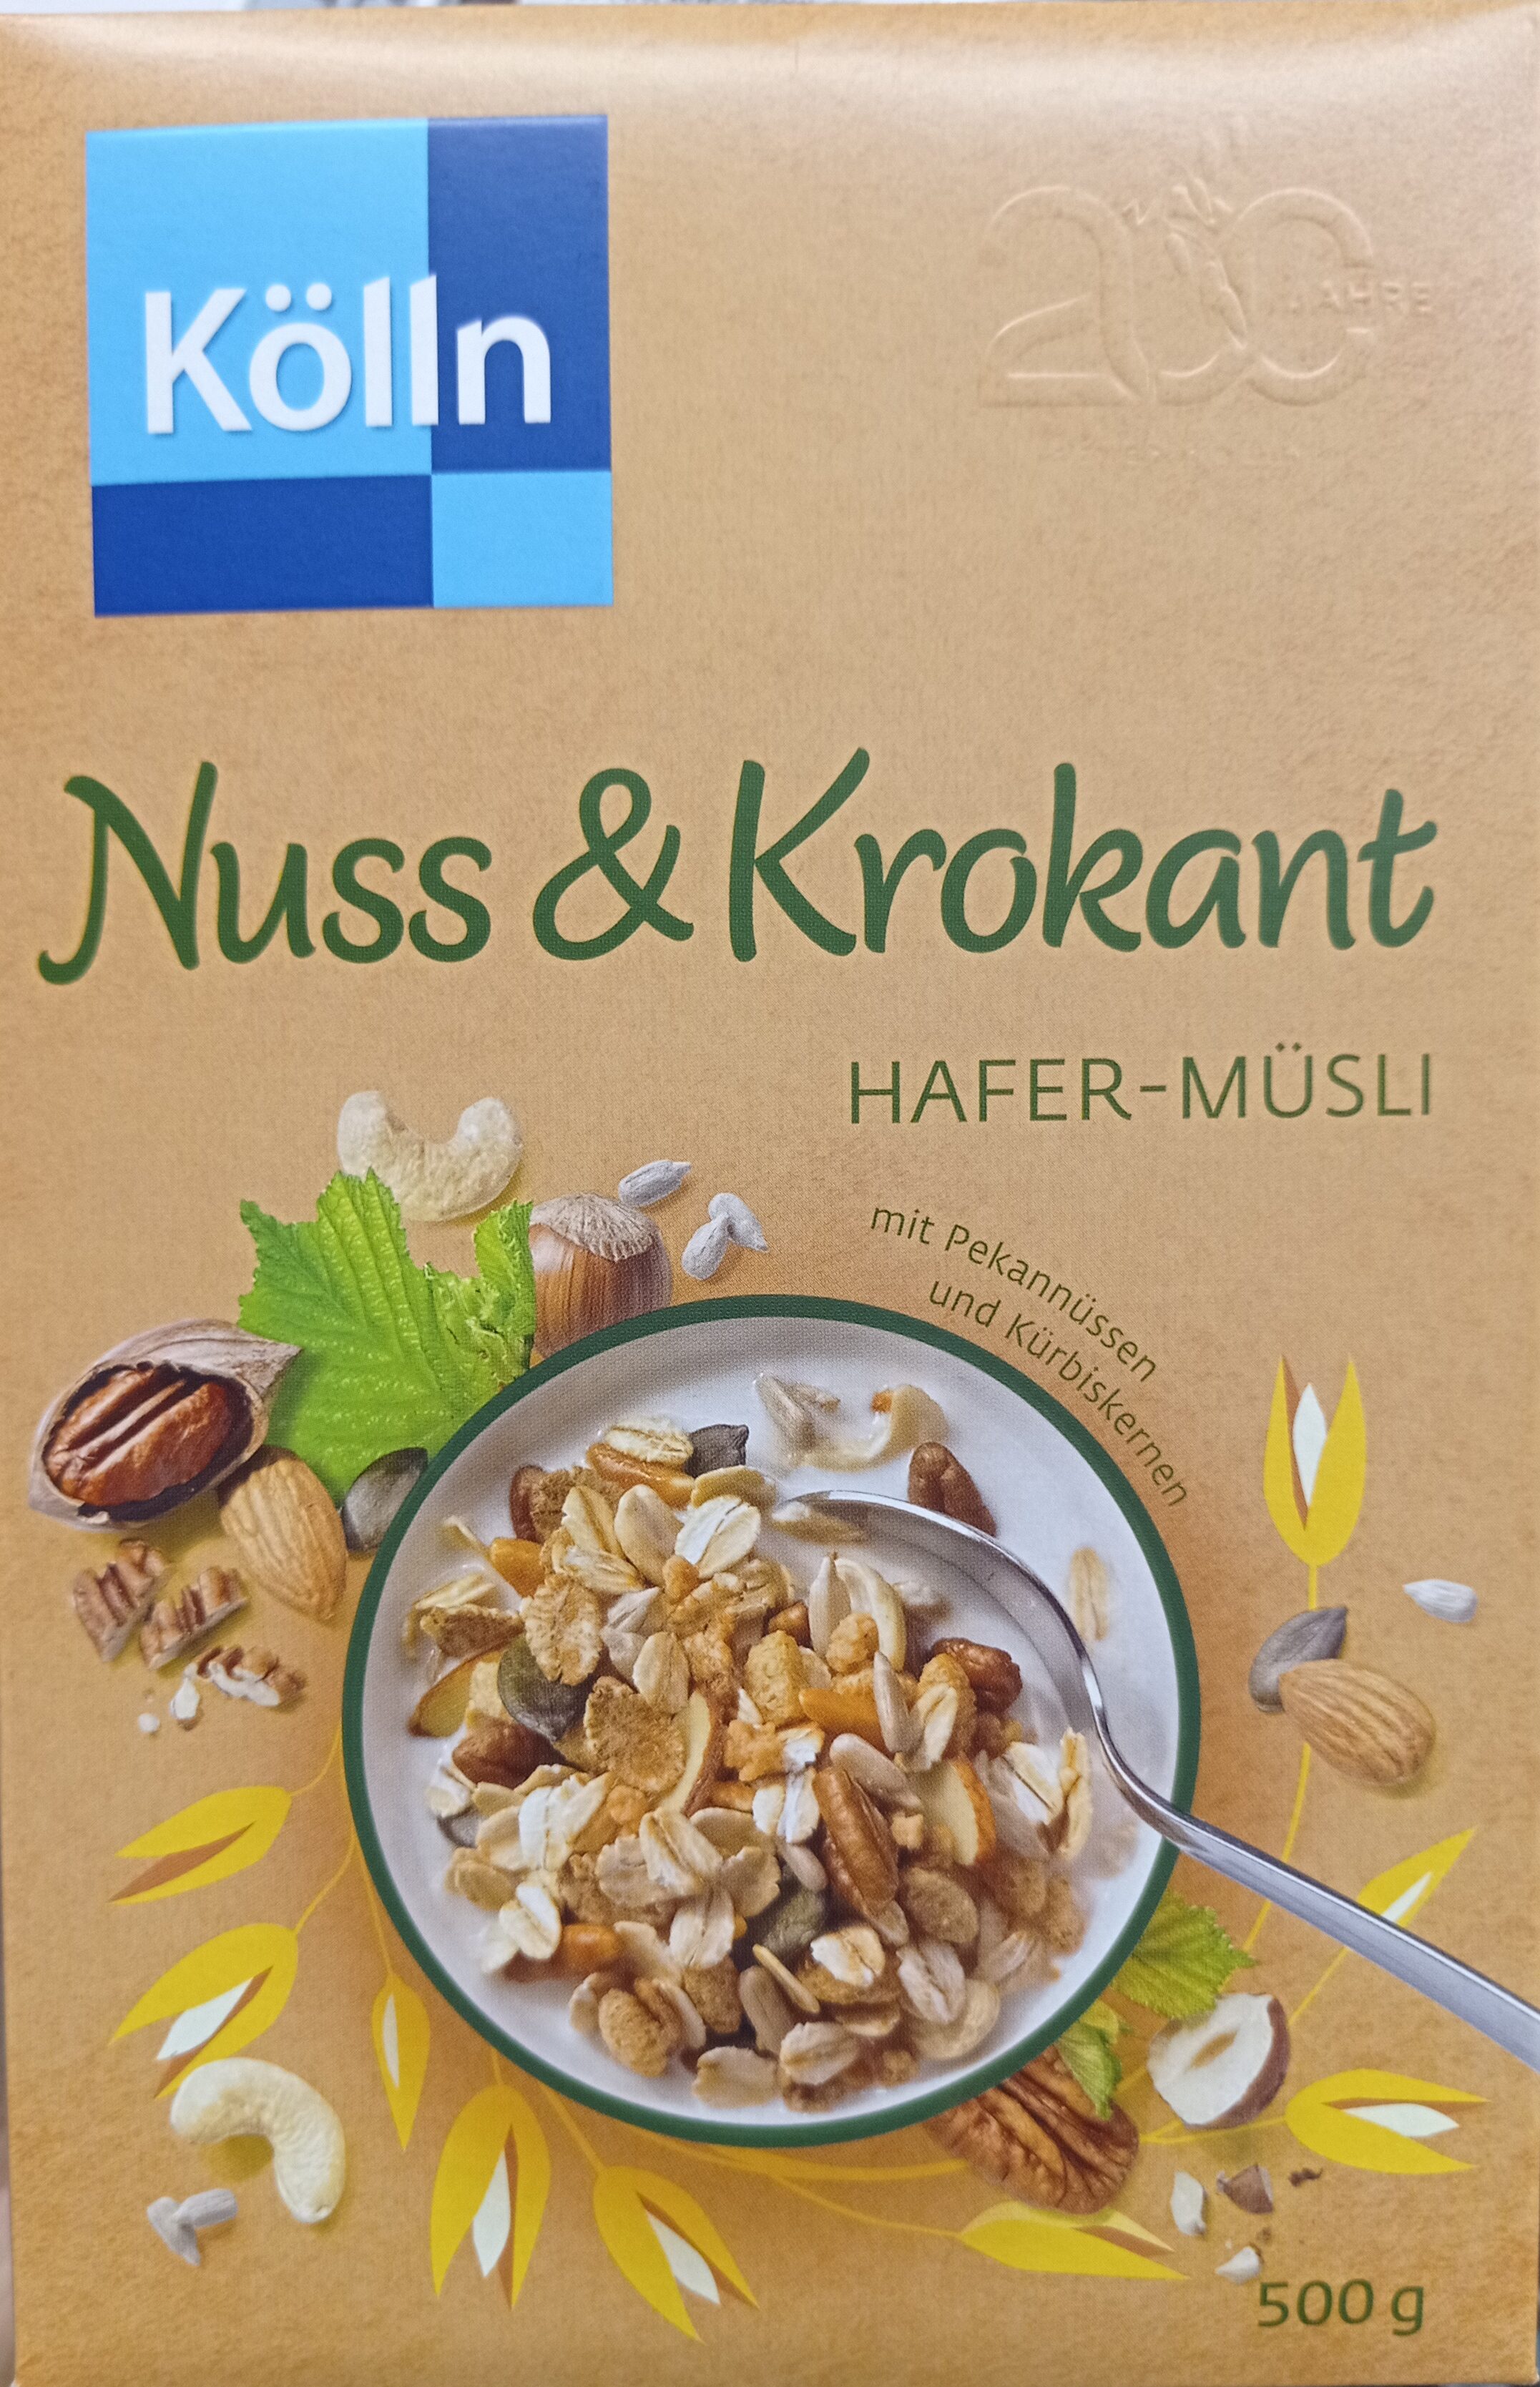 Kölln Müsli Nuss & Krokant - Product - de